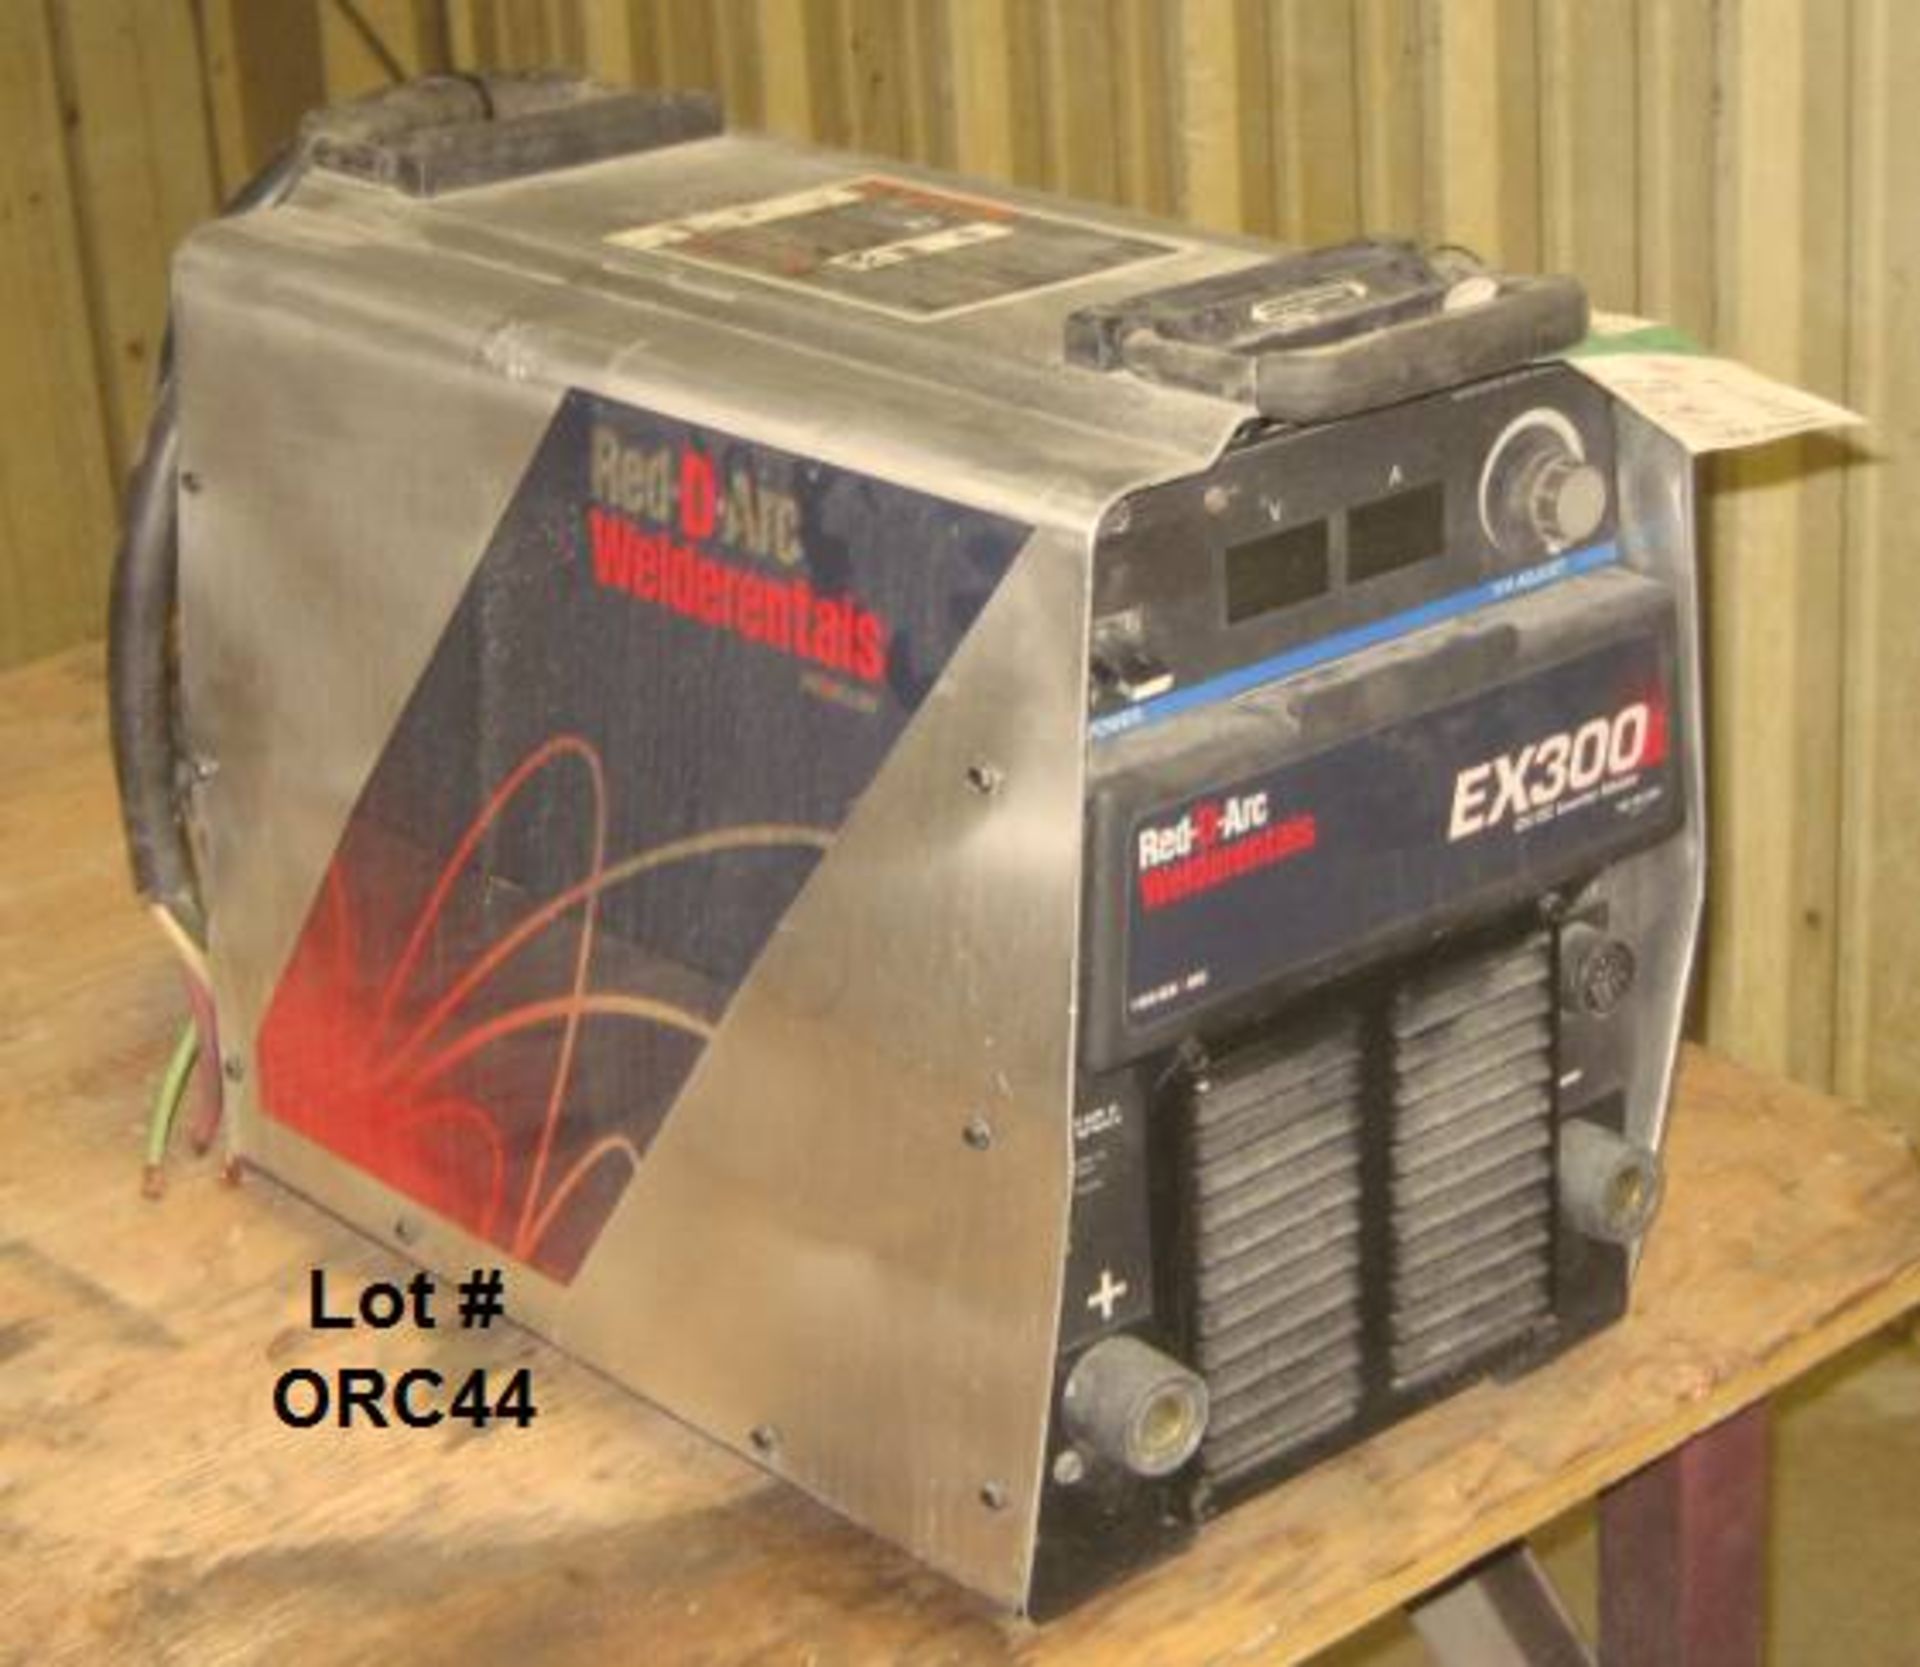 2004 MILLER REX300 EX300 cc/cv inverter welder